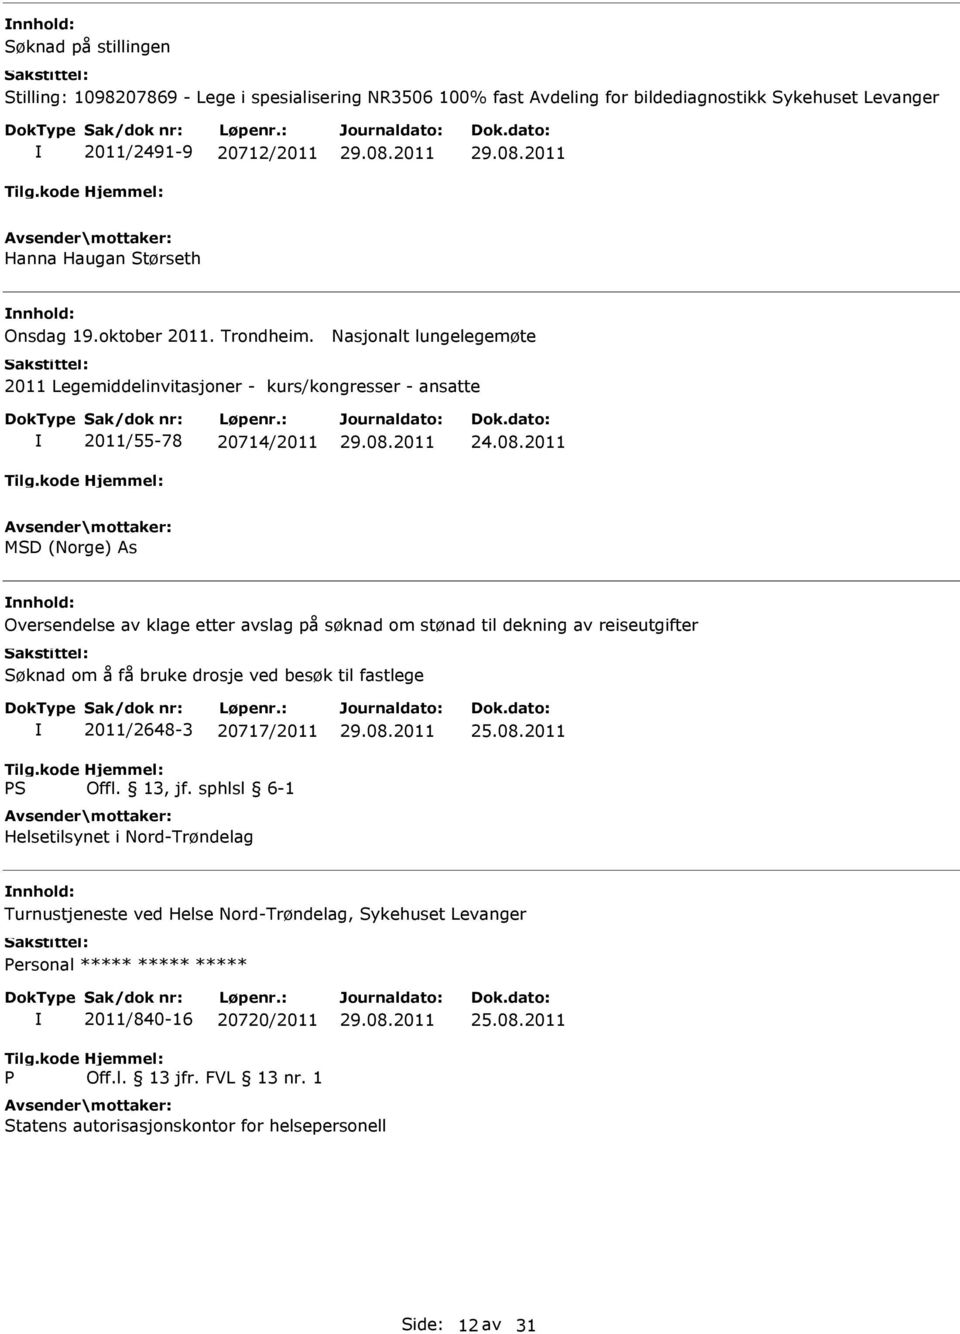 2011 MSD (Norge) As Oversendelse av klage etter avslag på søknad om stønad til dekning av reiseutgifter Søknad om å få bruke drosje ved besøk til fastlege 2011/2648-3